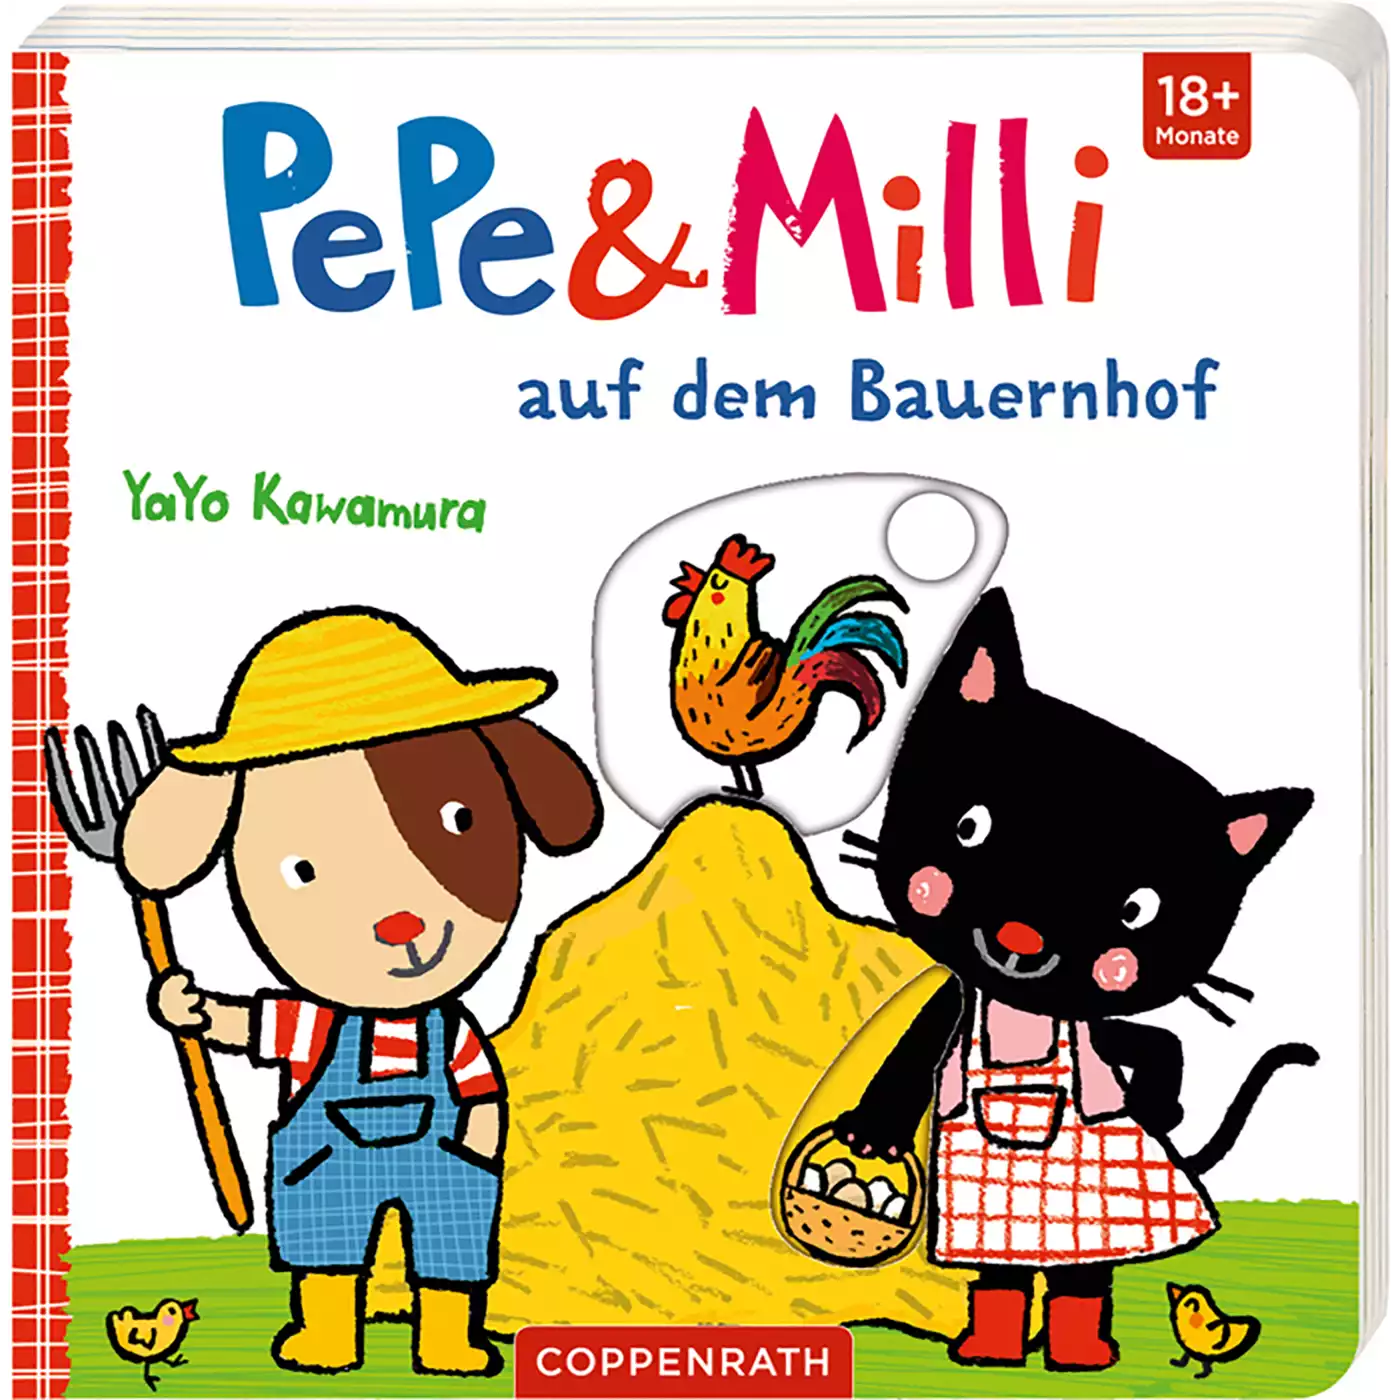 Pepe & Milli auf dem Bauernhof COPPENRATH 2000573907704 1